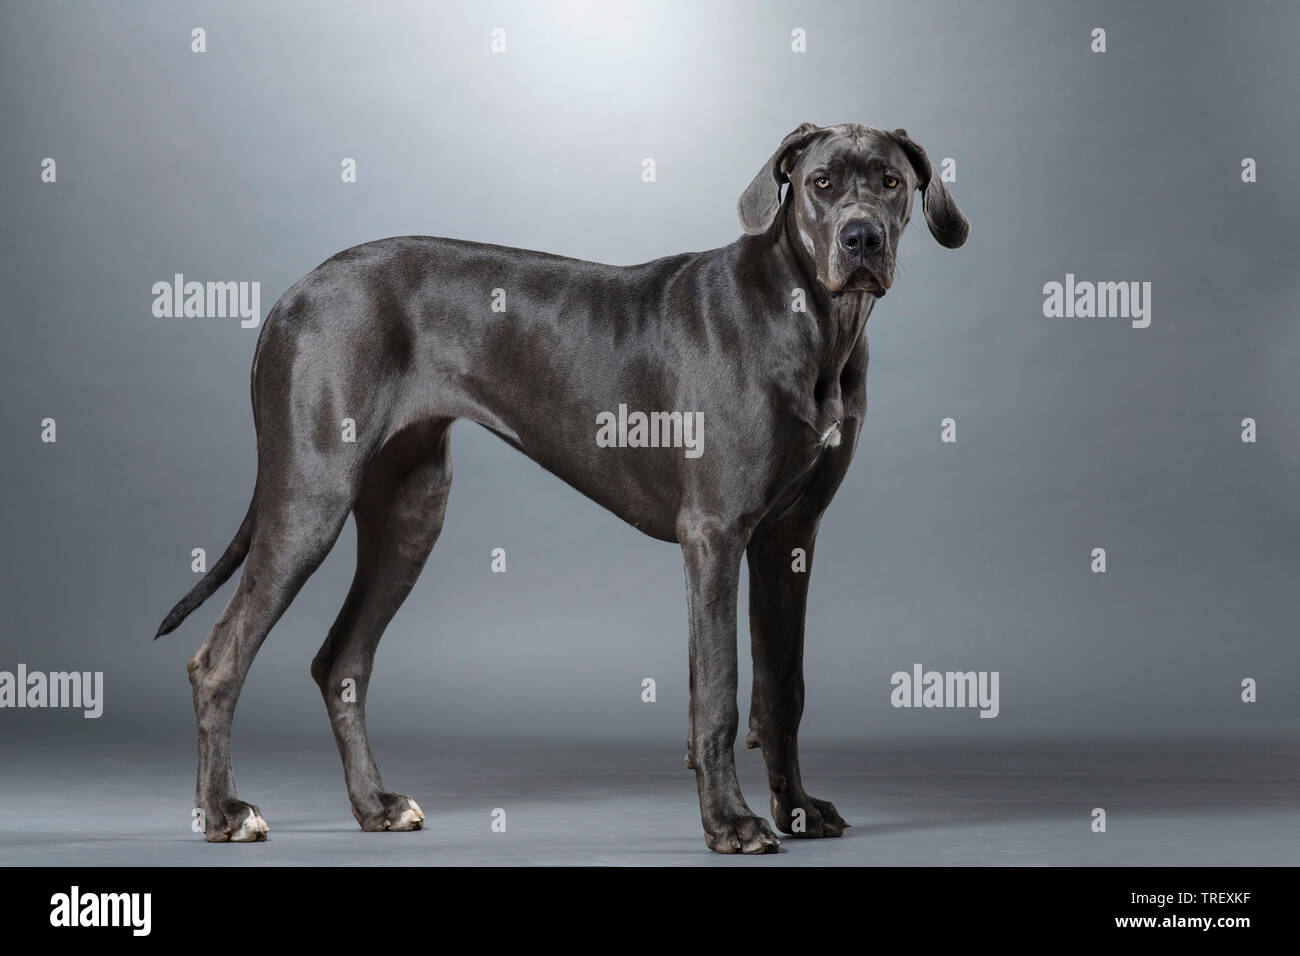 Alano. Cane adulto in piedi, visto da lato a. Studio Immagine contro uno sfondo grigio. Germania Foto Stock